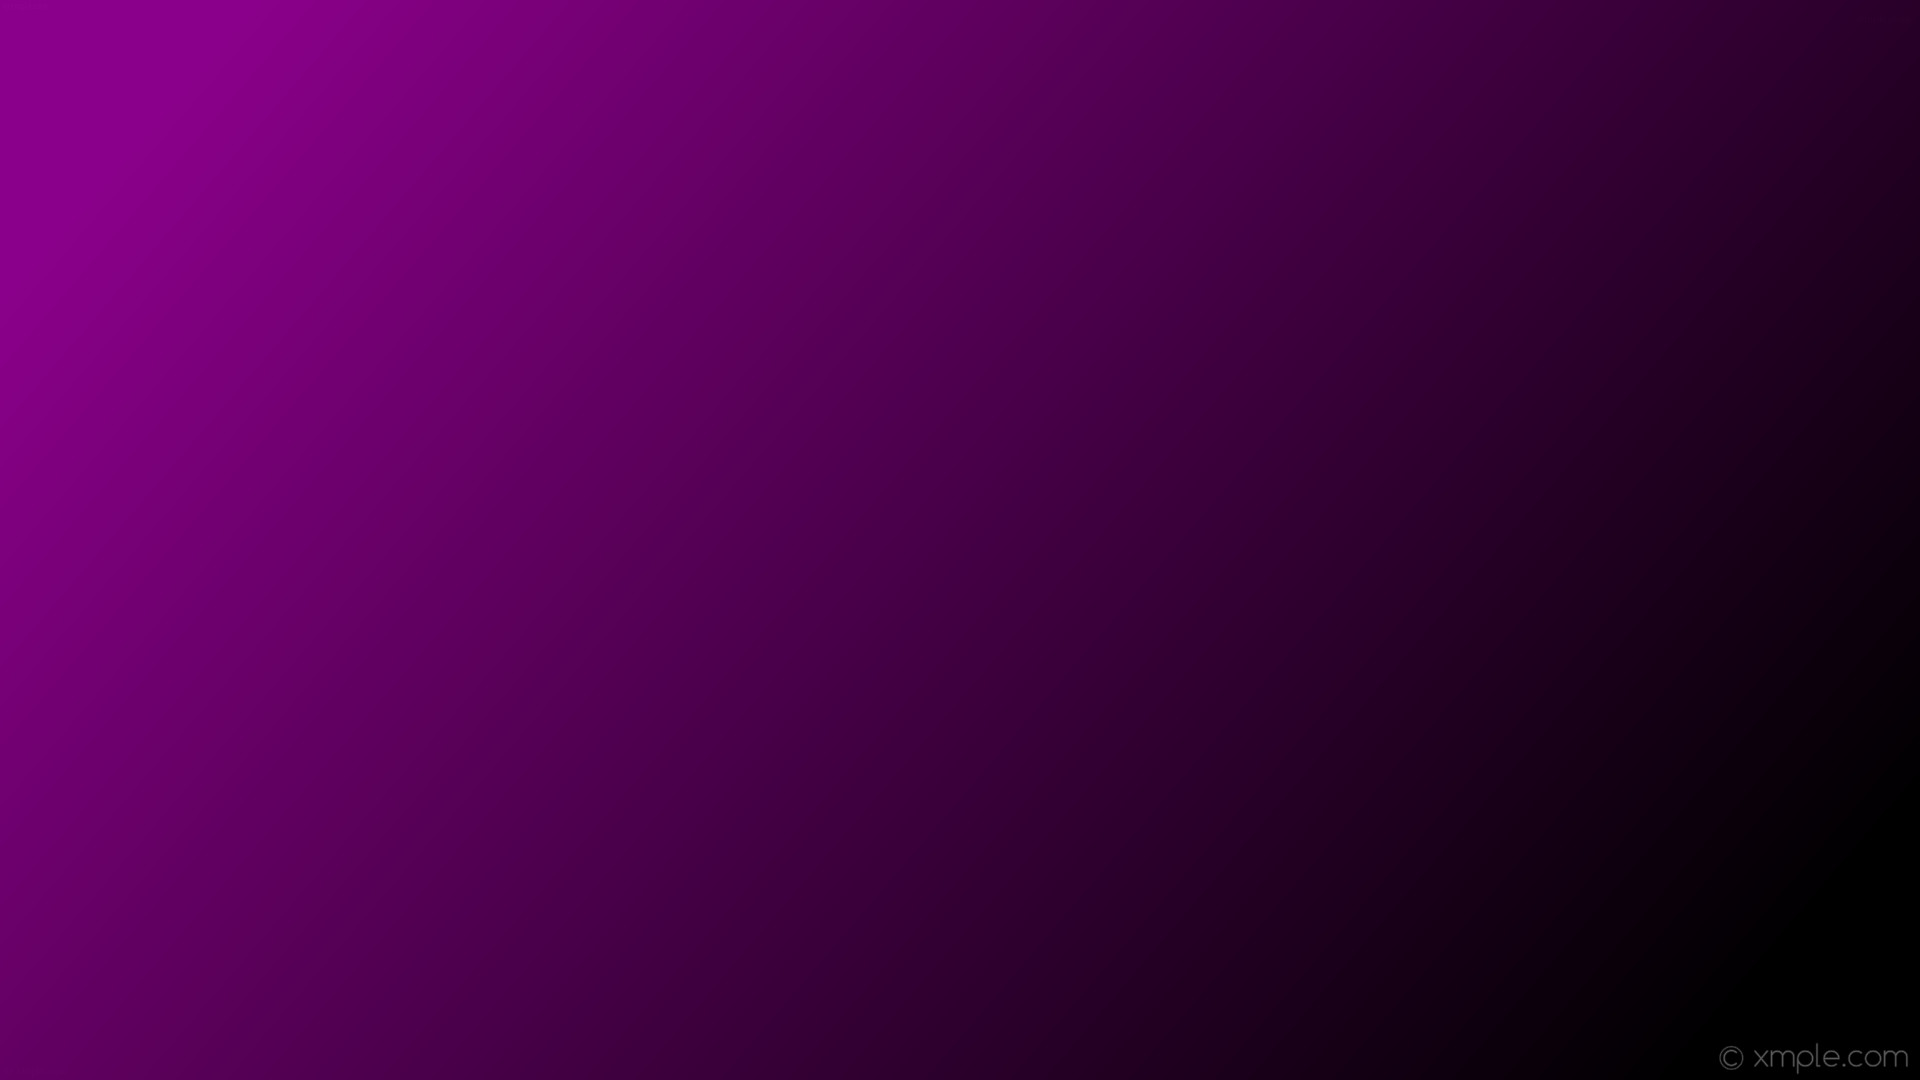 1920x1080 wallpaper black purple gradient linear dark magenta #000000 #8b008b 345Â°